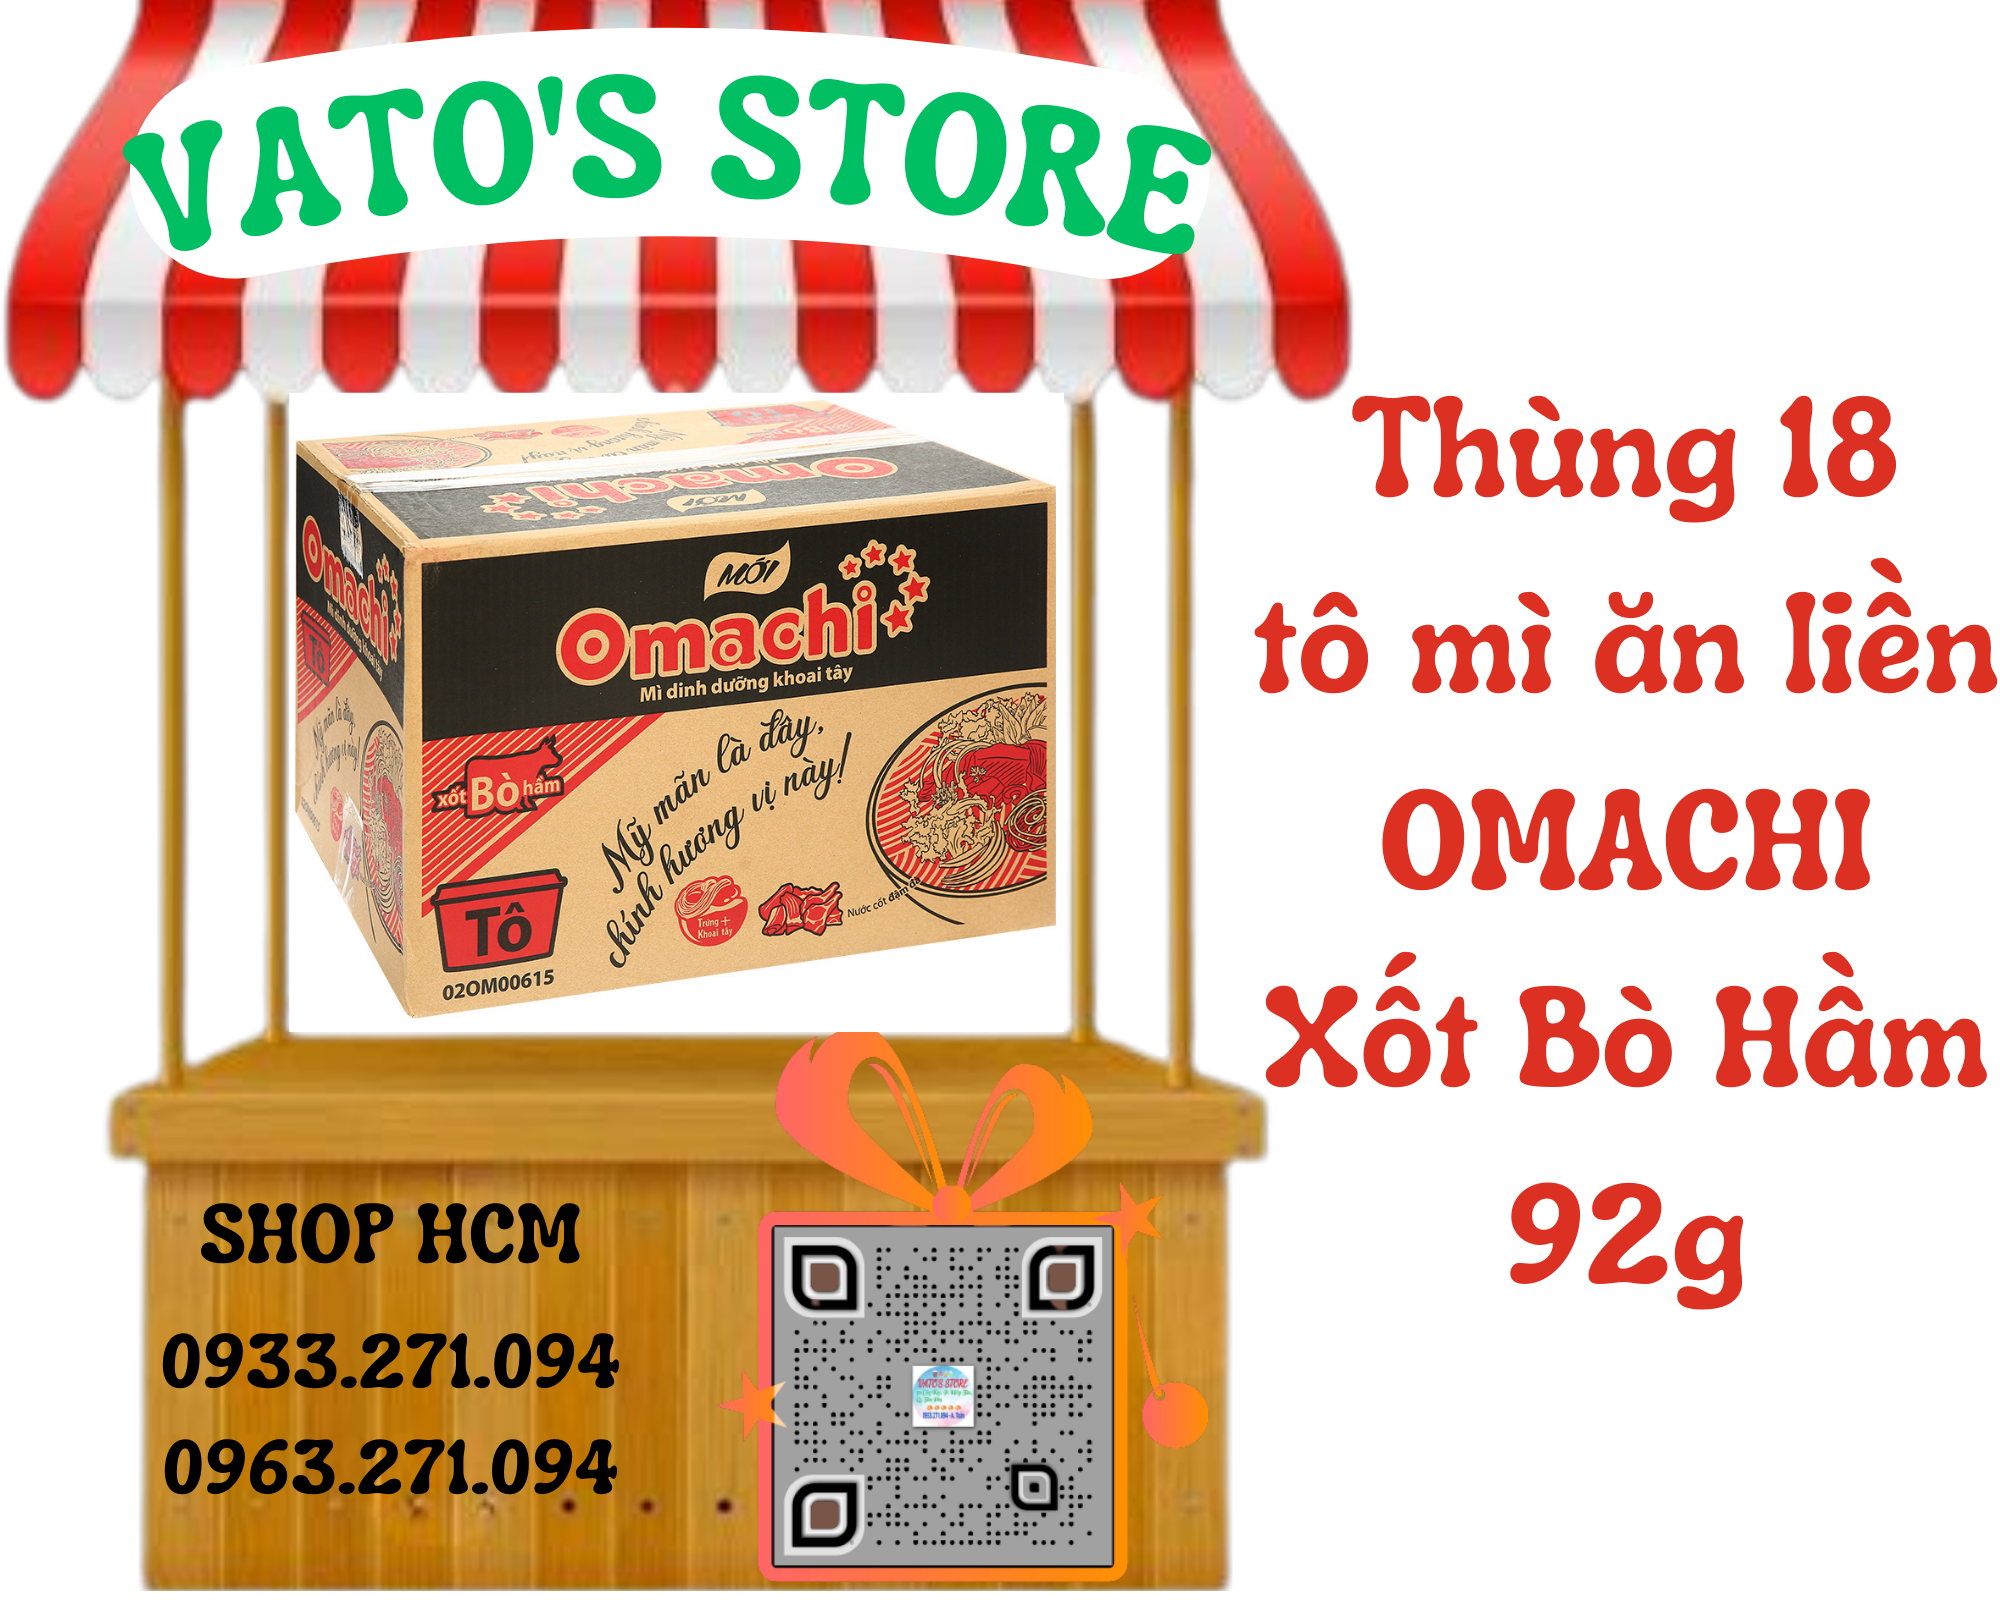 Thùng 18 hộp mì khoai tây Omachi xốt bò hầm 92g / Combo 4 hộp mì khoai tây Omachi xốt bò hầm 92g